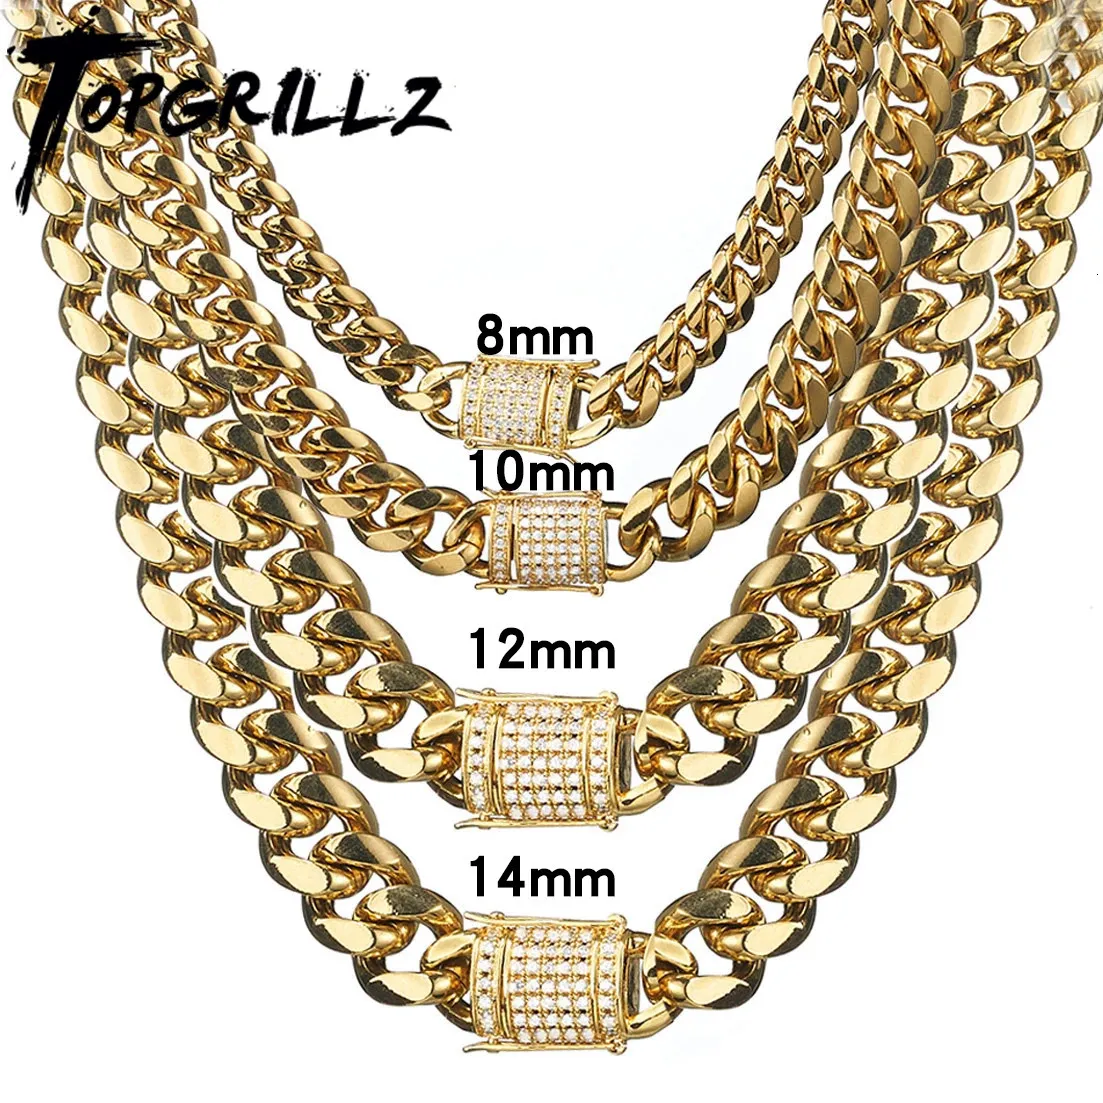 TOPGRILLZ collier Bracelet ensemble 8101214MM acier inoxydable or Miami chaîne cubaine Hip Hop mode bijoux cadeau pour hommes 240119